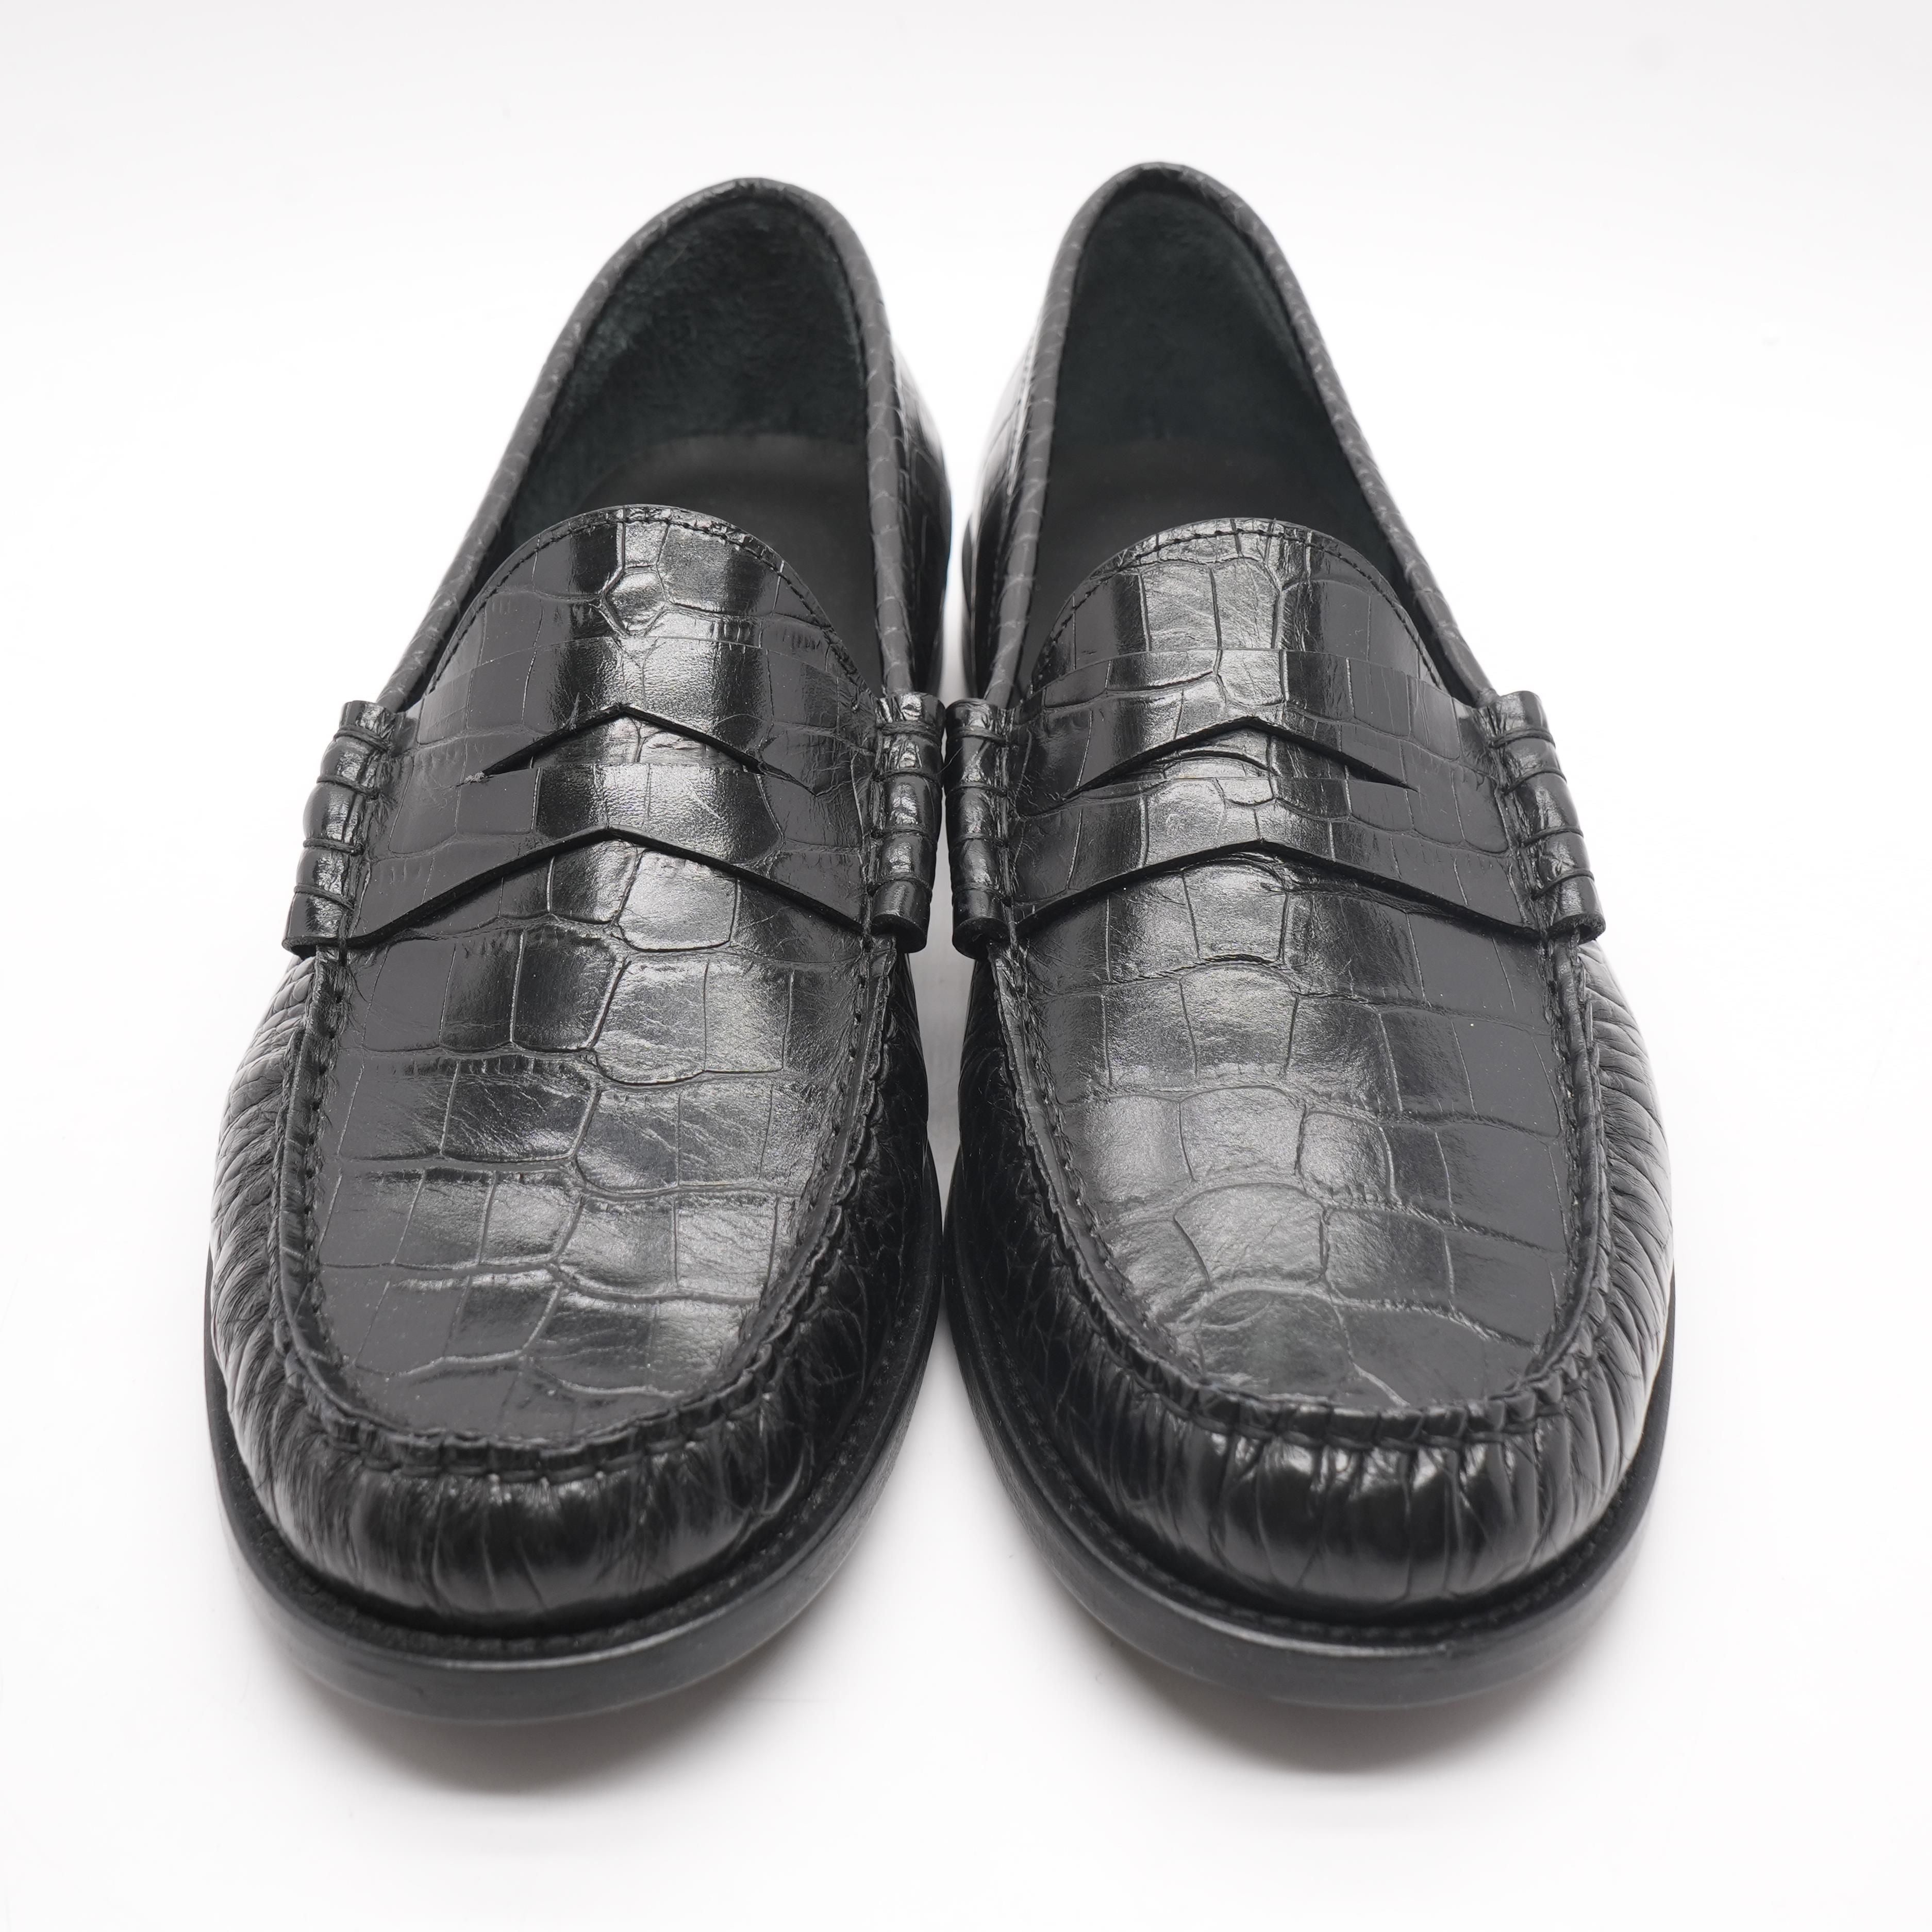 Croc Slip On Black Loafer Shoes